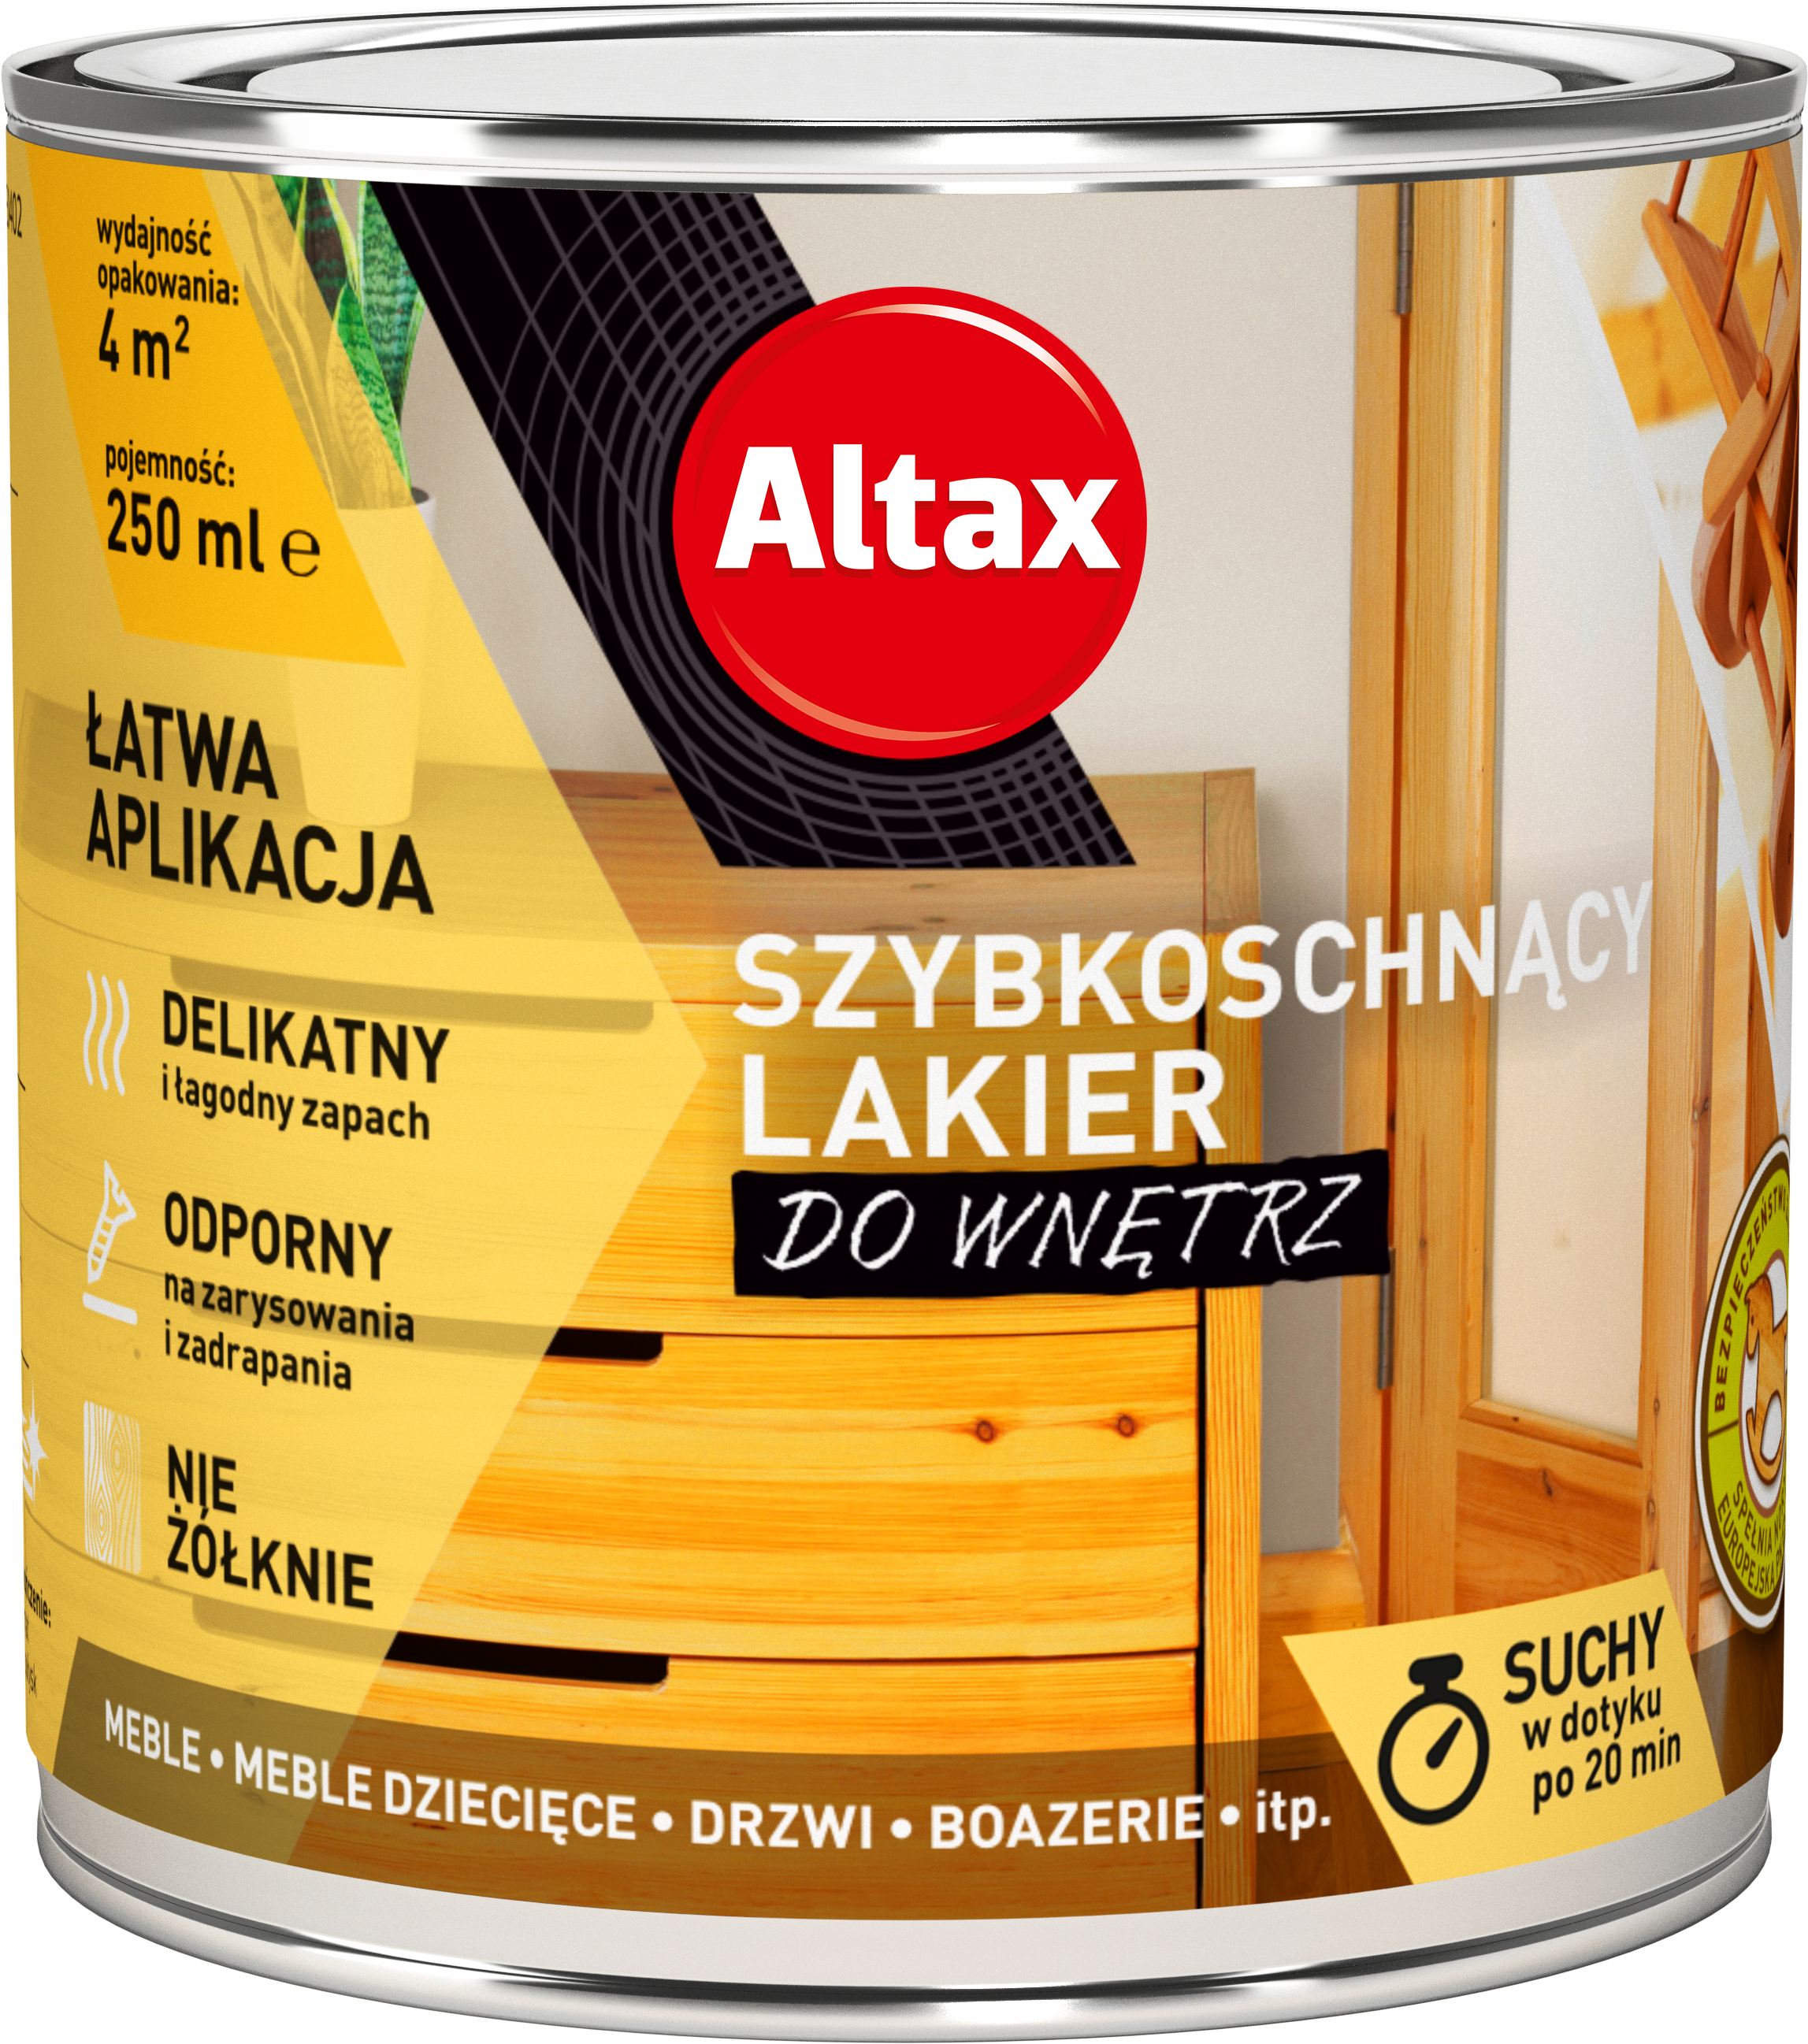 ALTAX-szybkoschnacy-lakier-do-wnetrz-250 ml